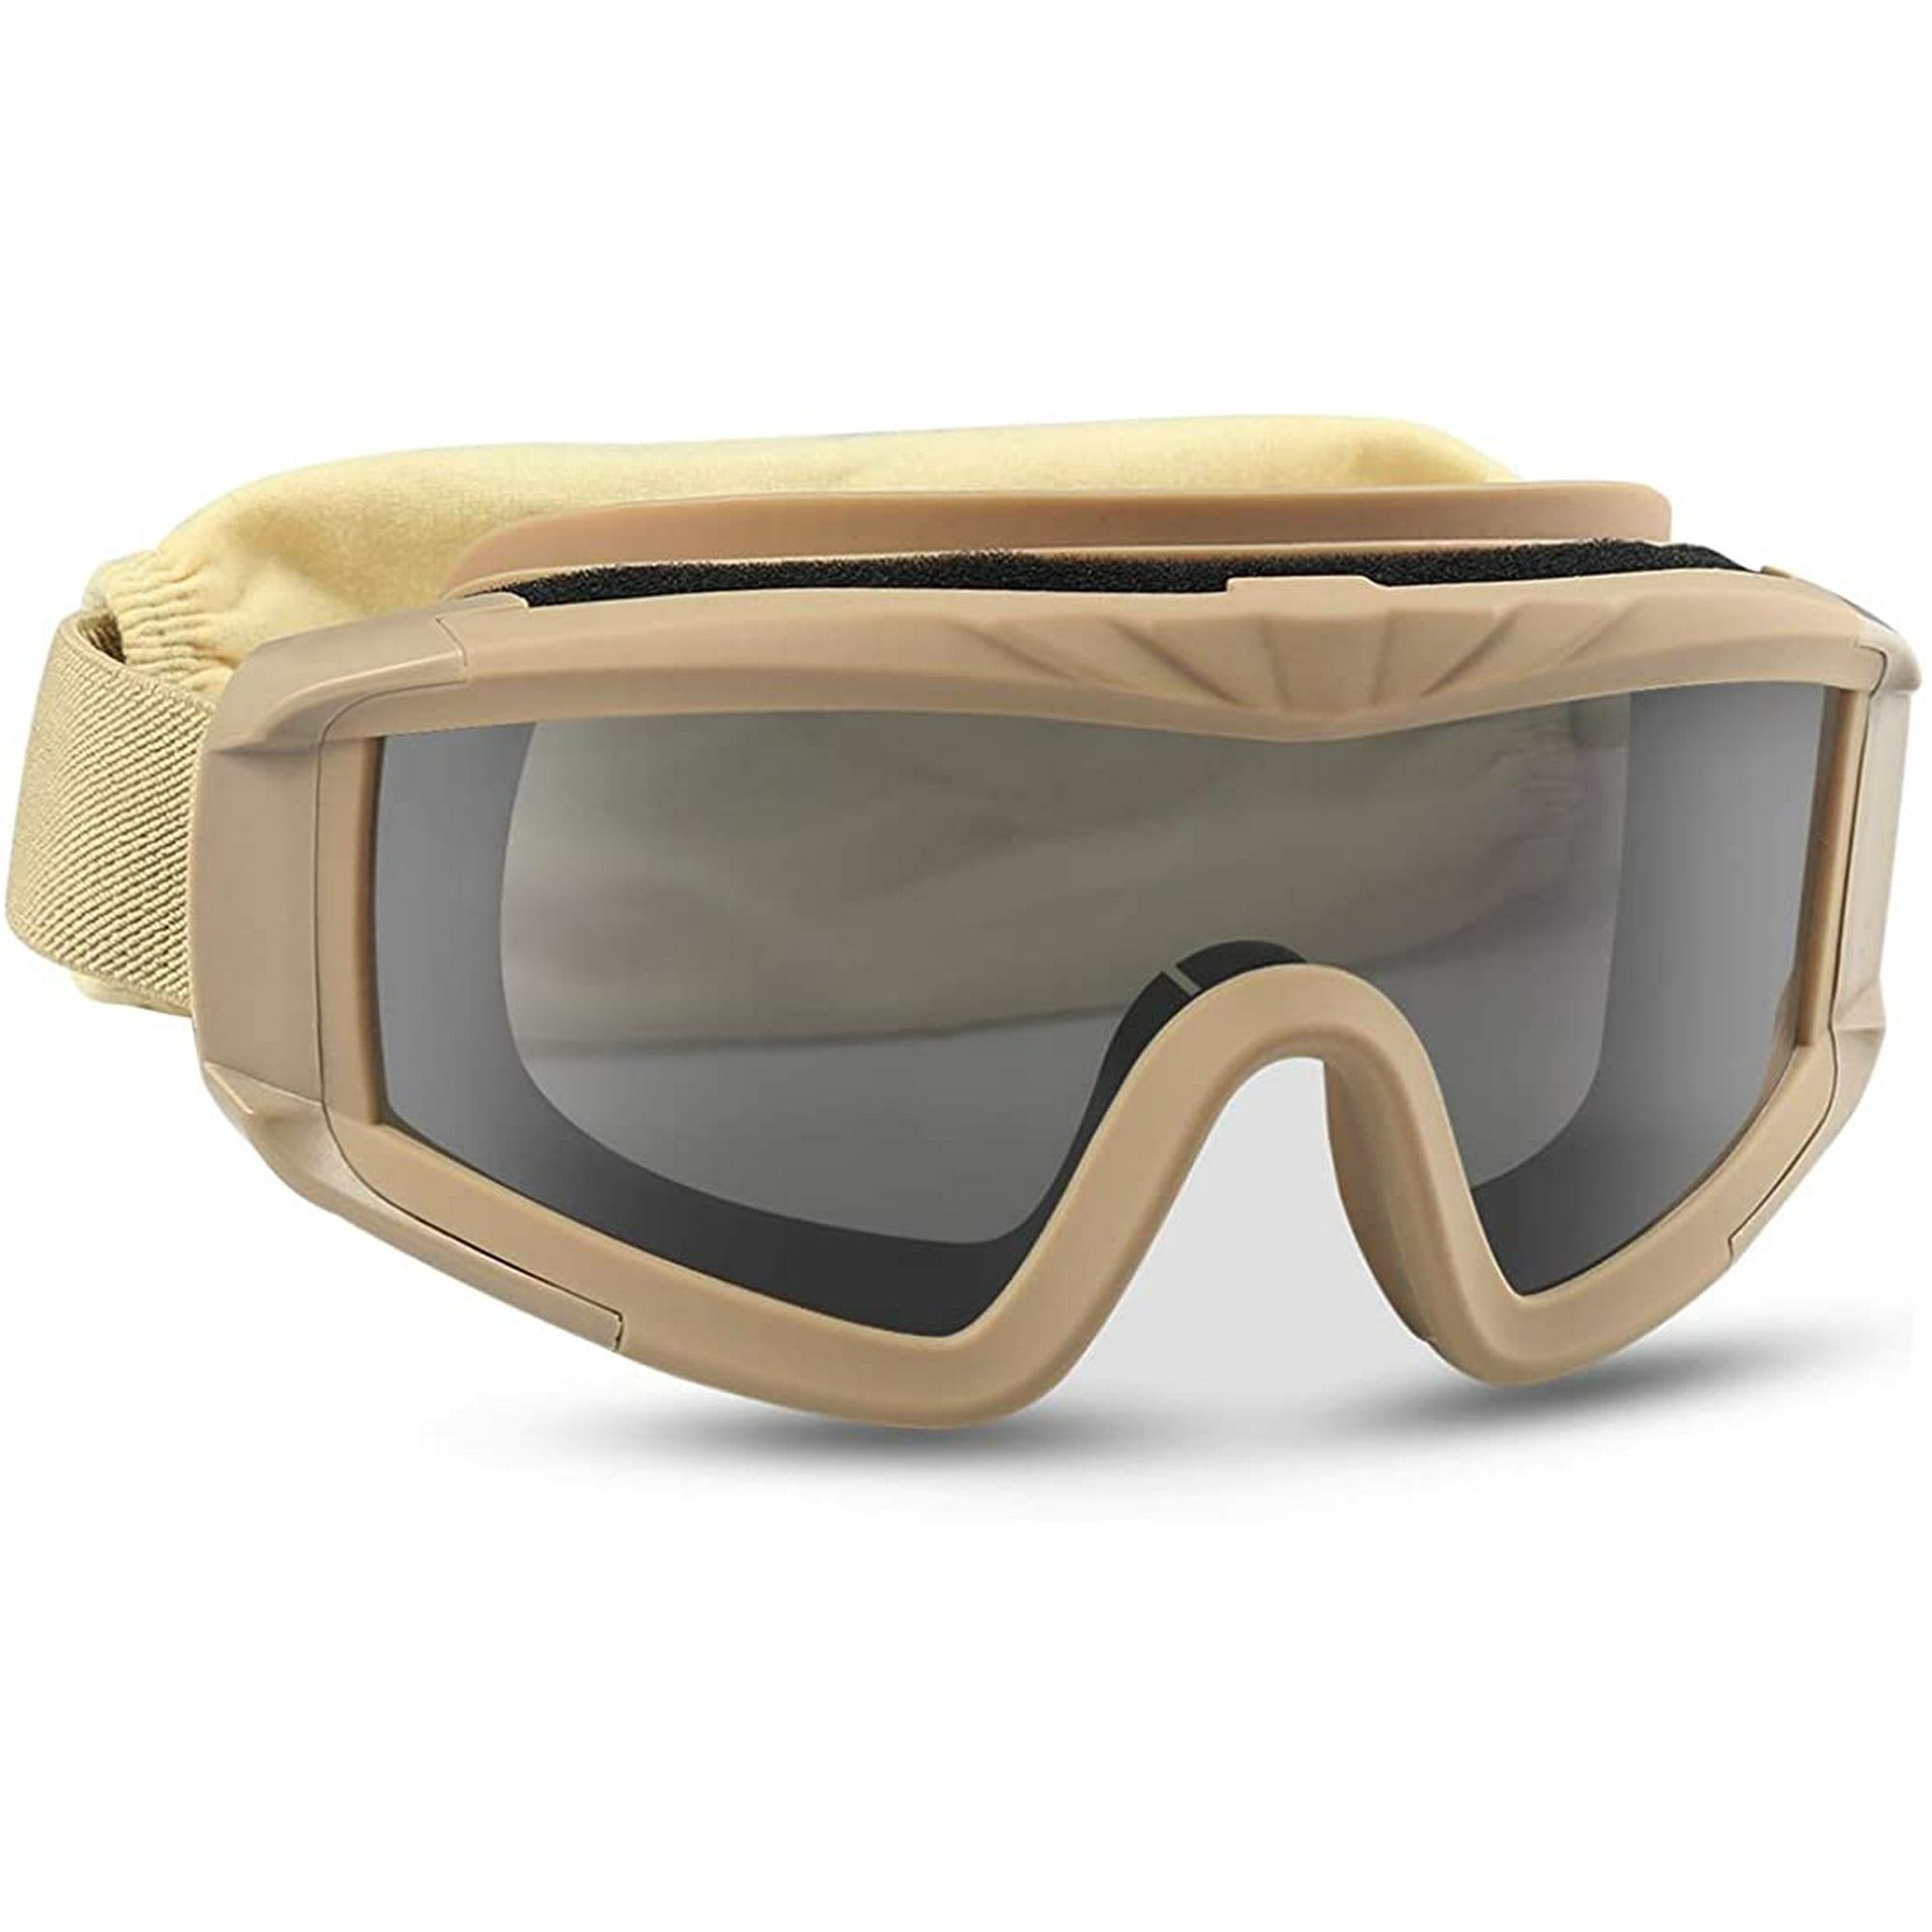 Airsoft - Gafas tácticas de seguridad con 3 lentes intercambiables antivaho